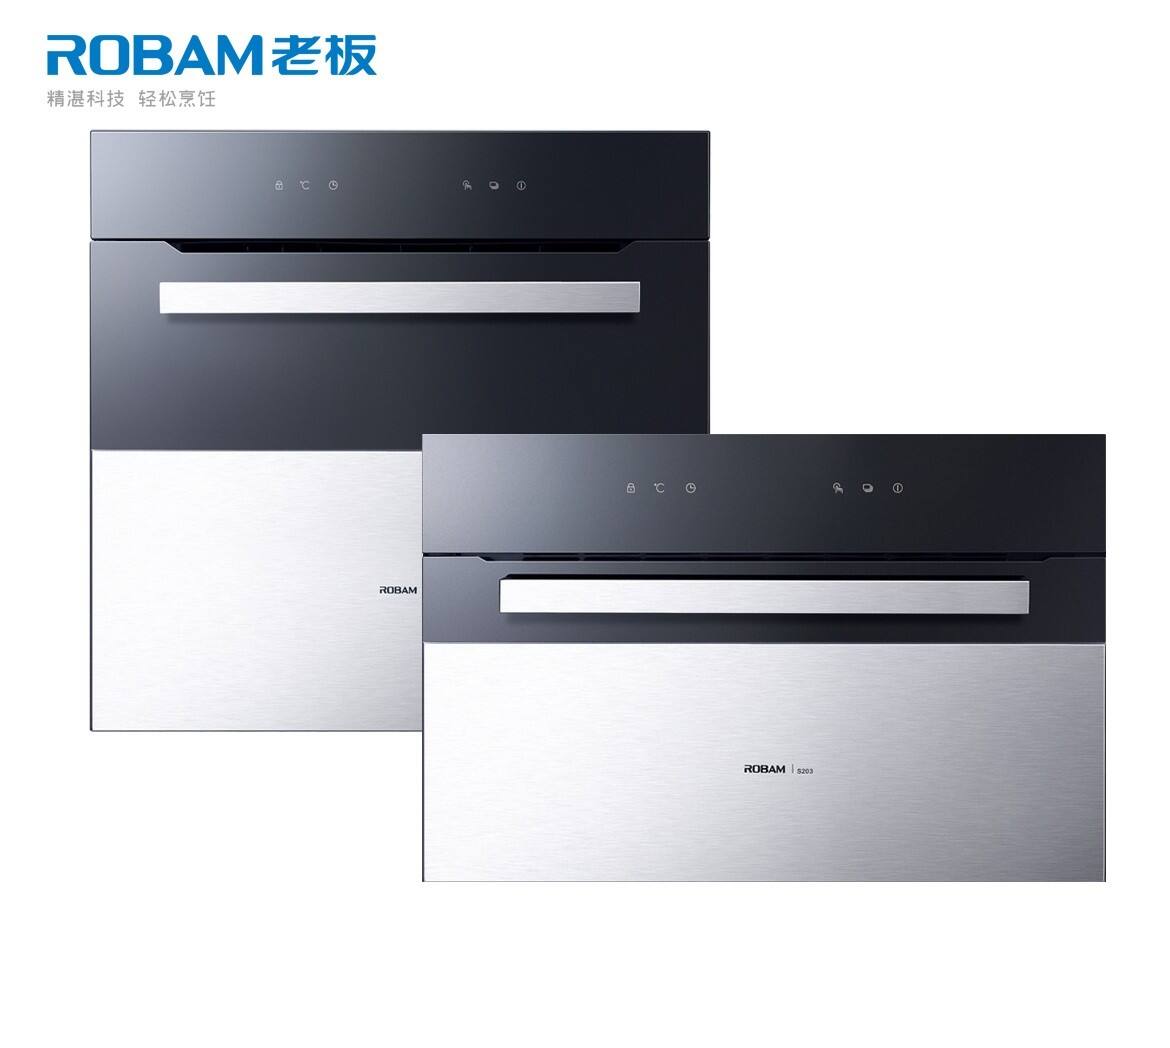 Robam/老板R020+S203嵌入式 电烤箱、电蒸箱套装